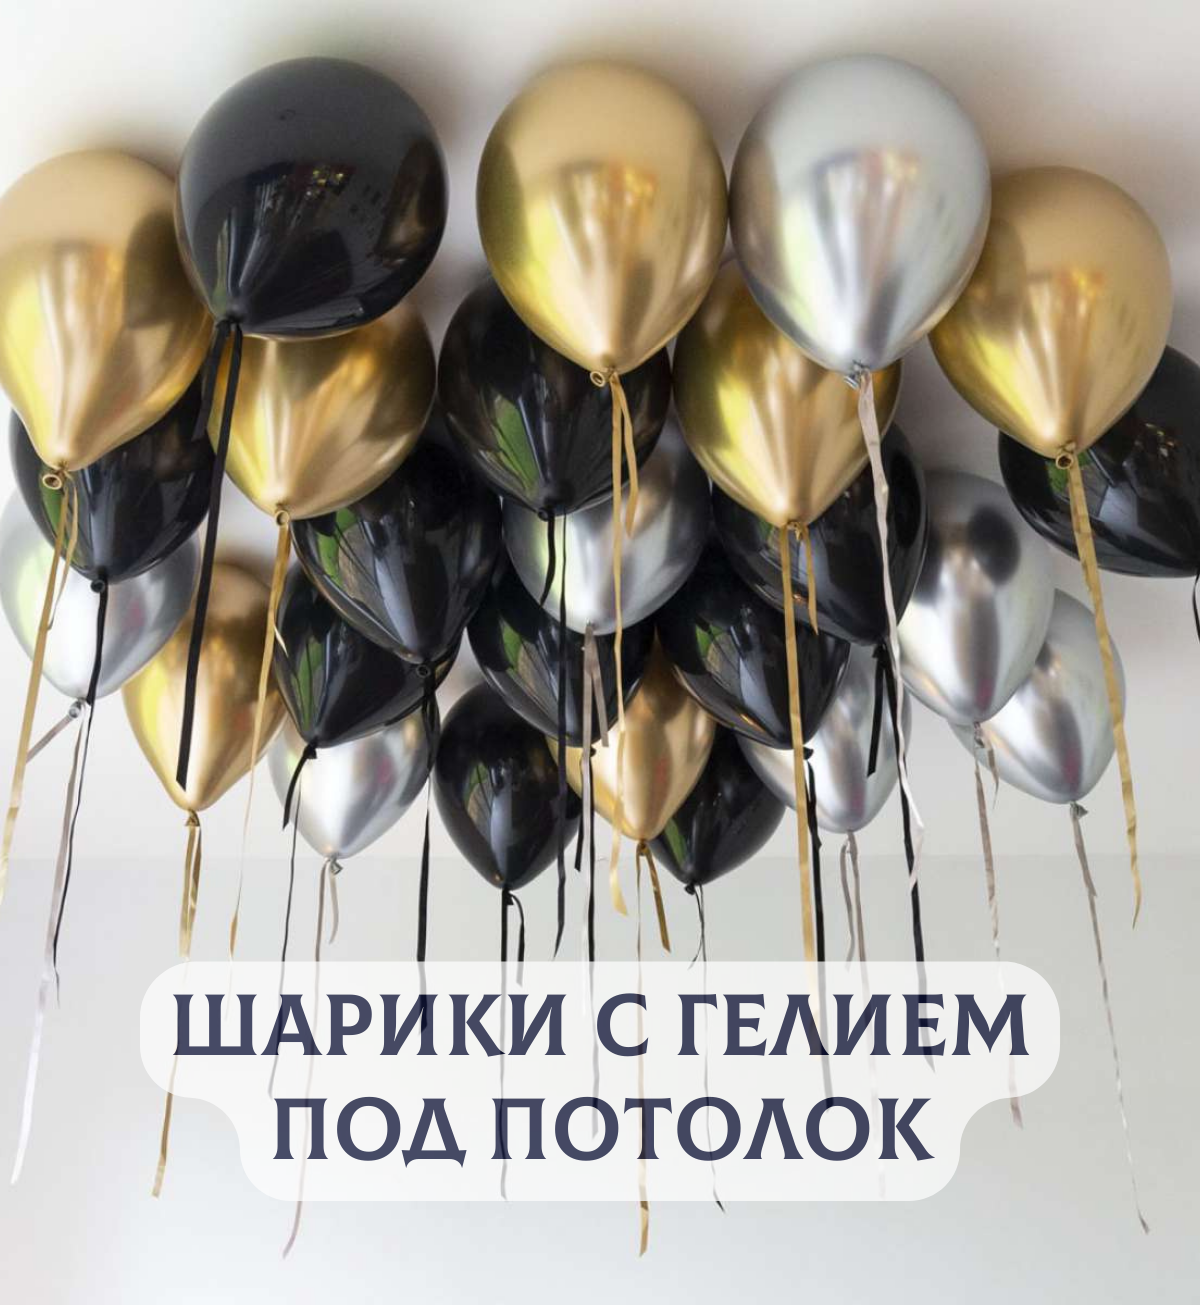 Воздушные шары с гелием под потолок "Черные с серебром и золотом" 5 шт.